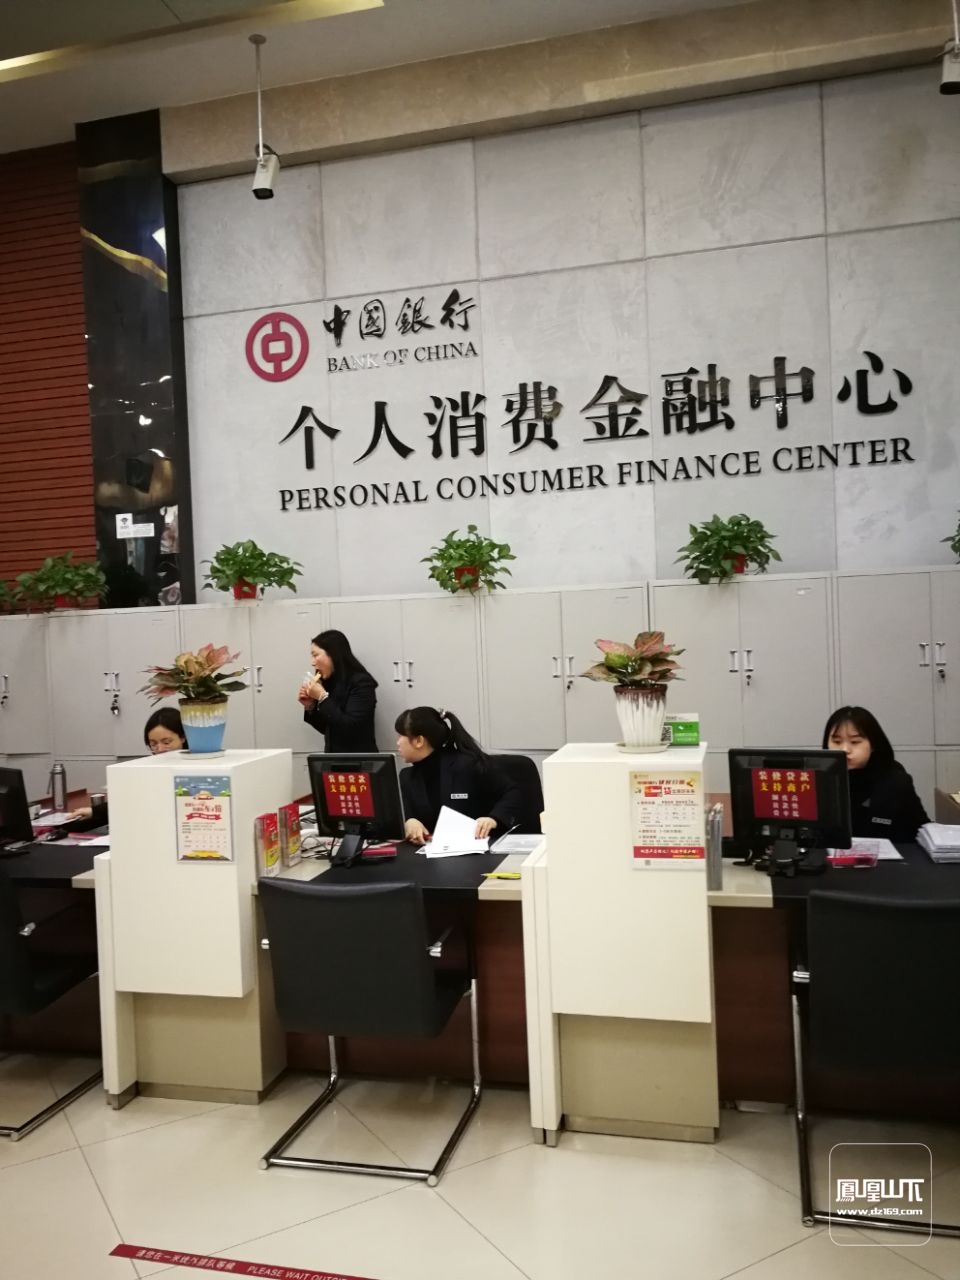 中国银行办理提前还款业务,8:30准时开门了,进